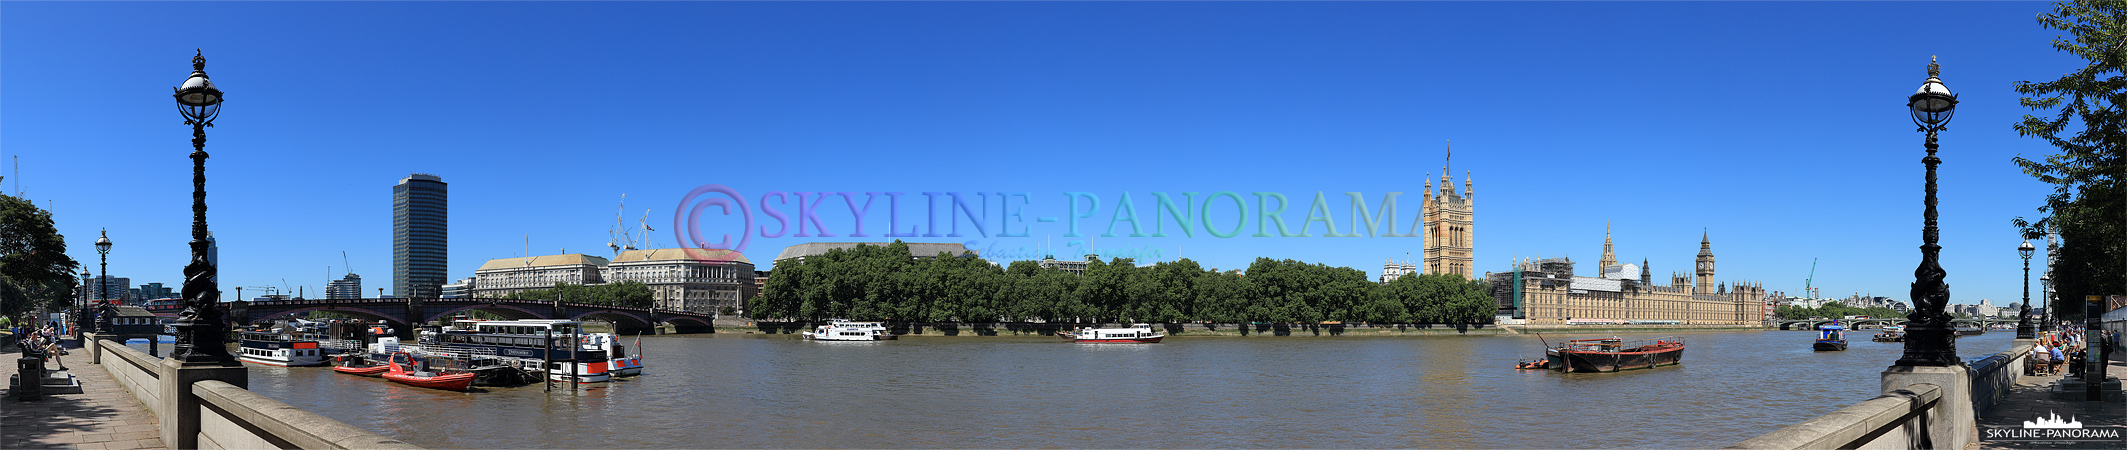 Bilder aus London - Am Tag unterwegs an der Themse mit dem Panorama auf den Palace of Westminster und Big Ben.